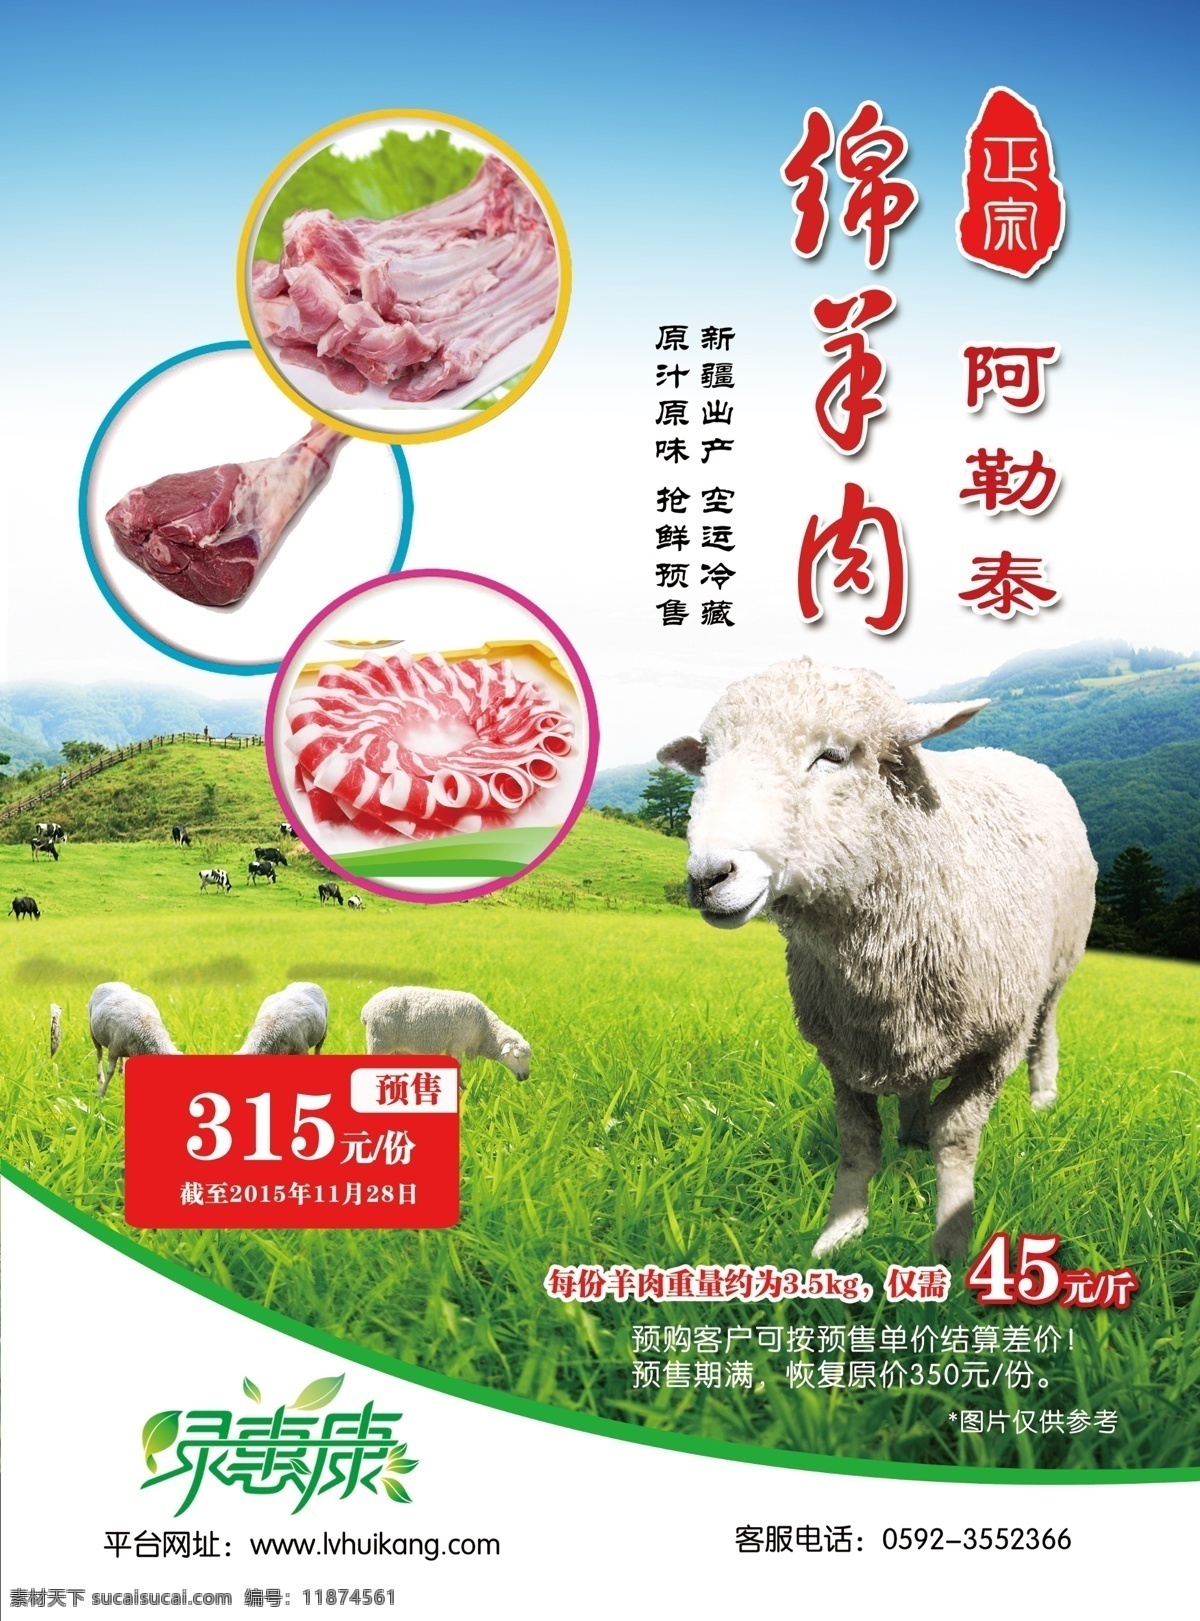 羊肉 绵羊 绵羊肉 羊肉宣传单 新疆羊肉 正宗羊肉 dm宣传单